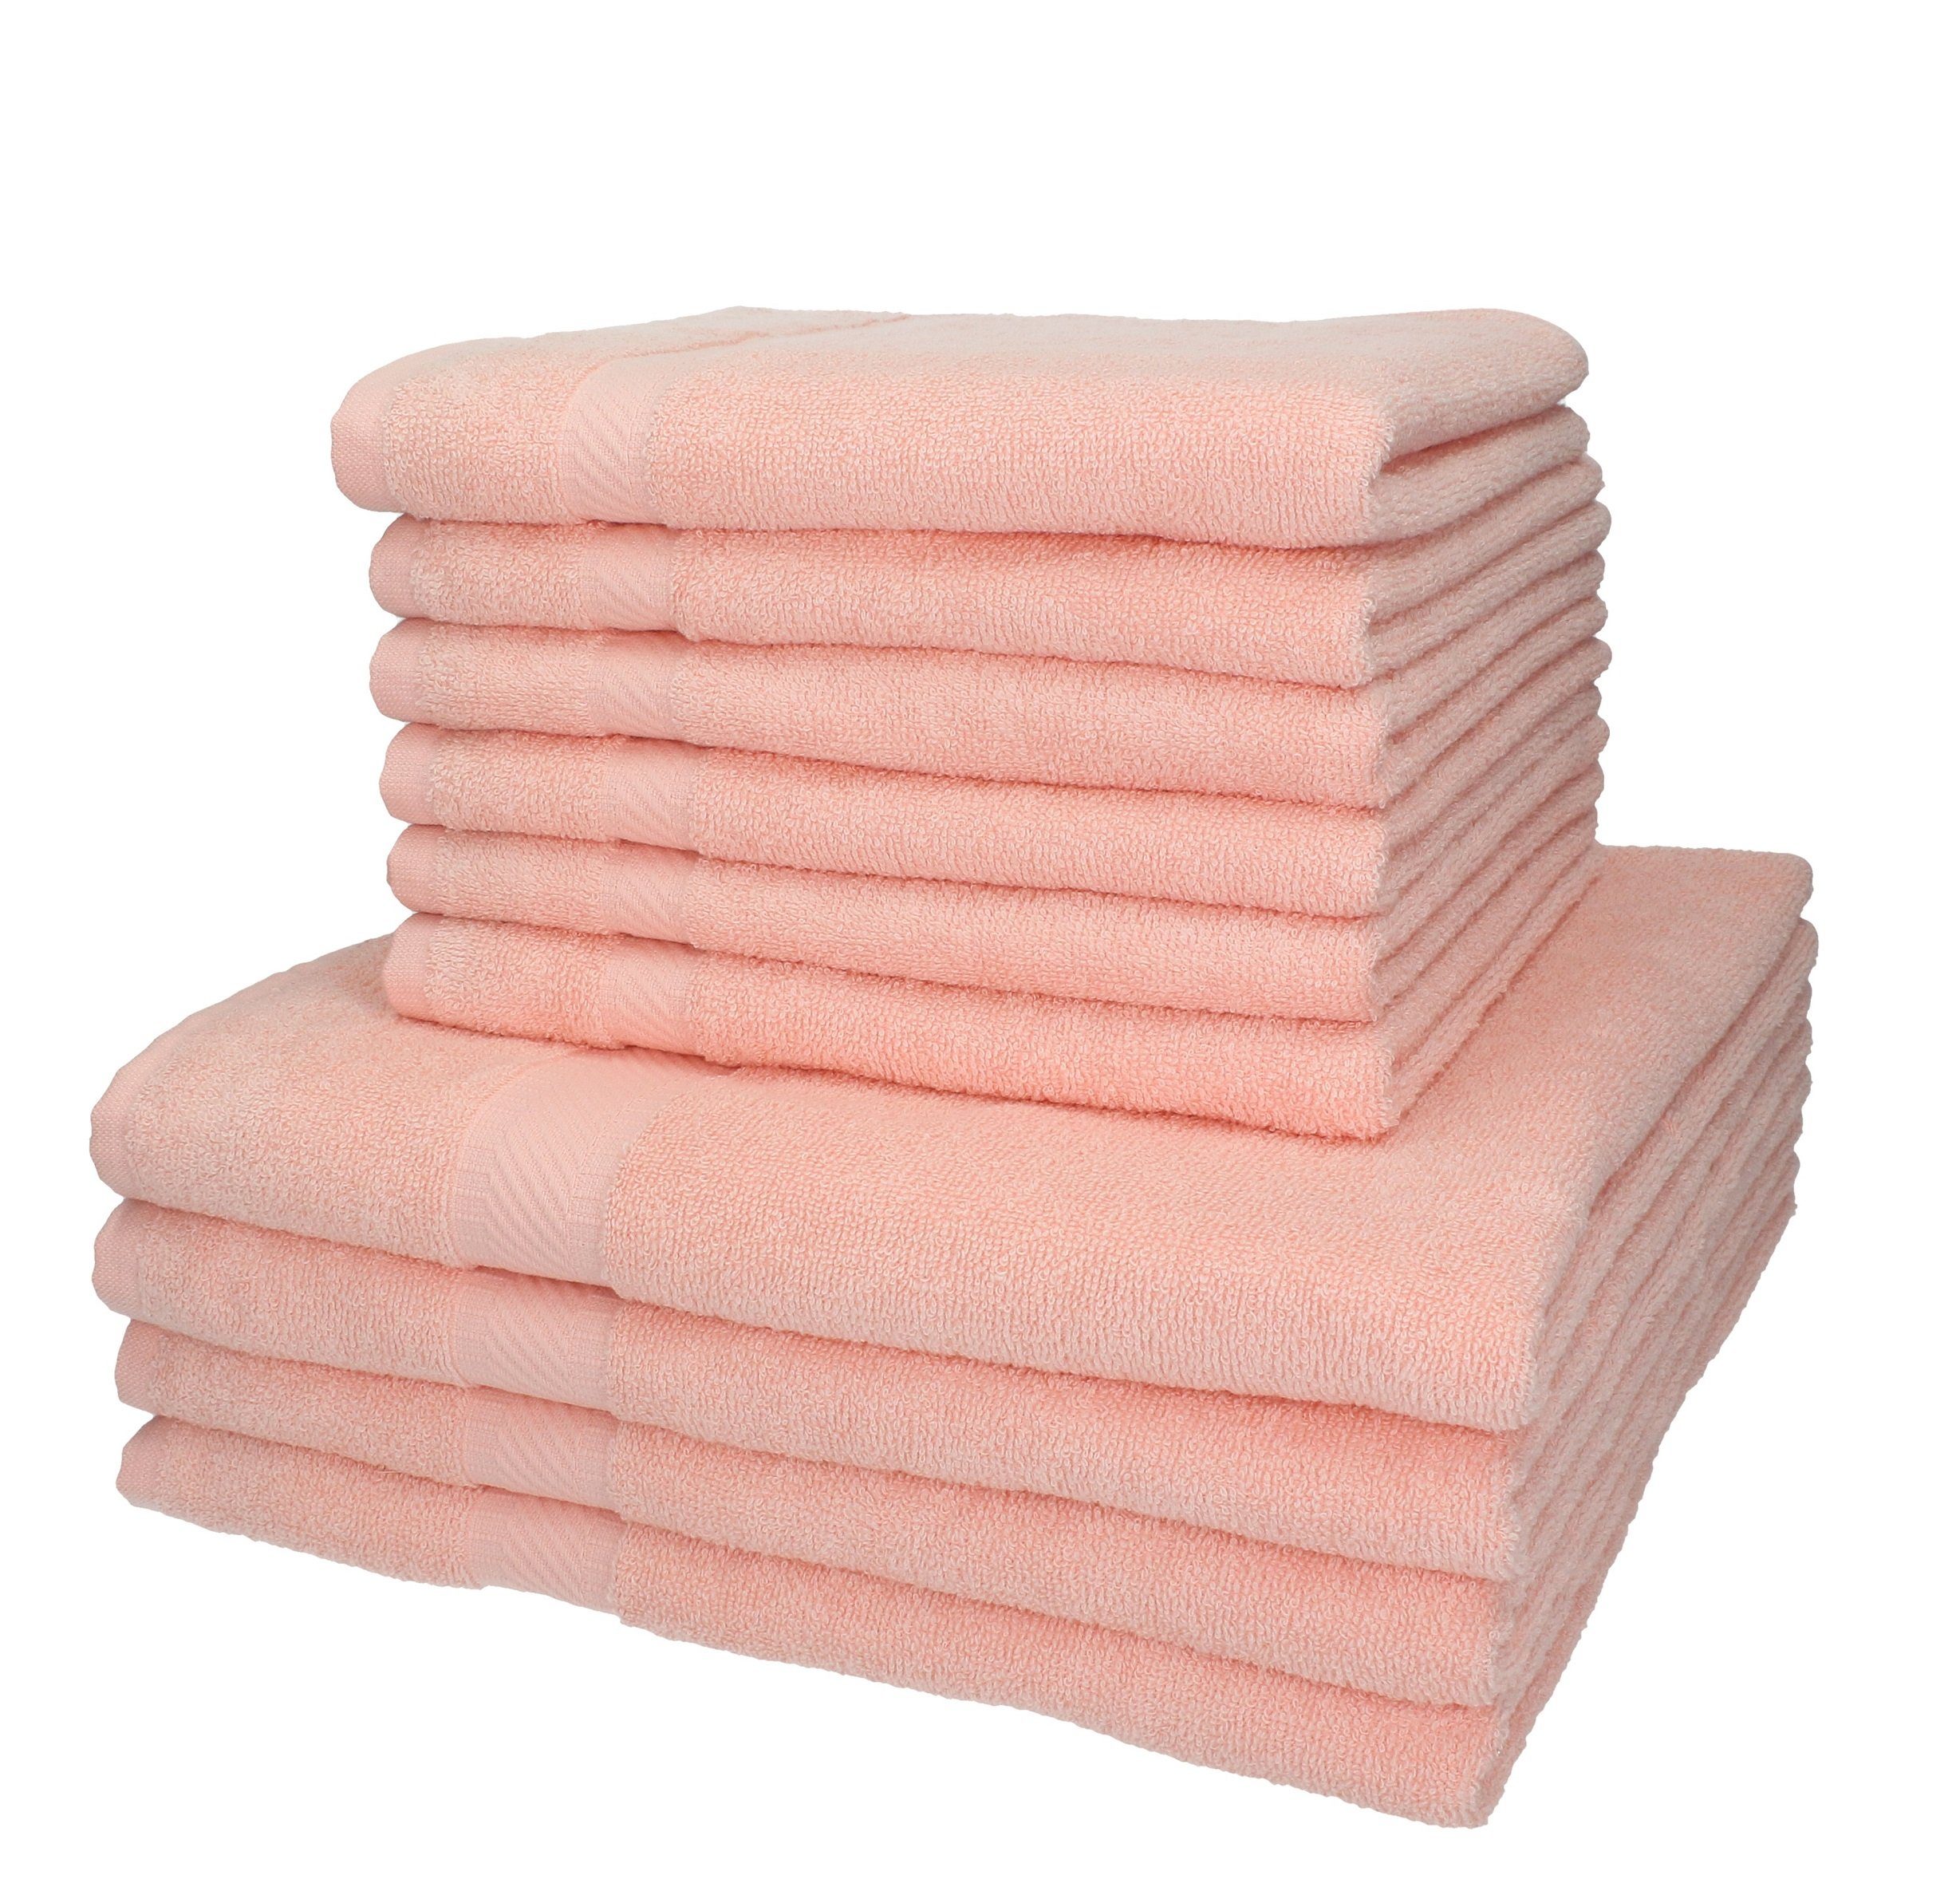 Handtuch-Set 100% Set Handtuch Betz Palermo apricot, 10-TLG. Farbe Baumwolle